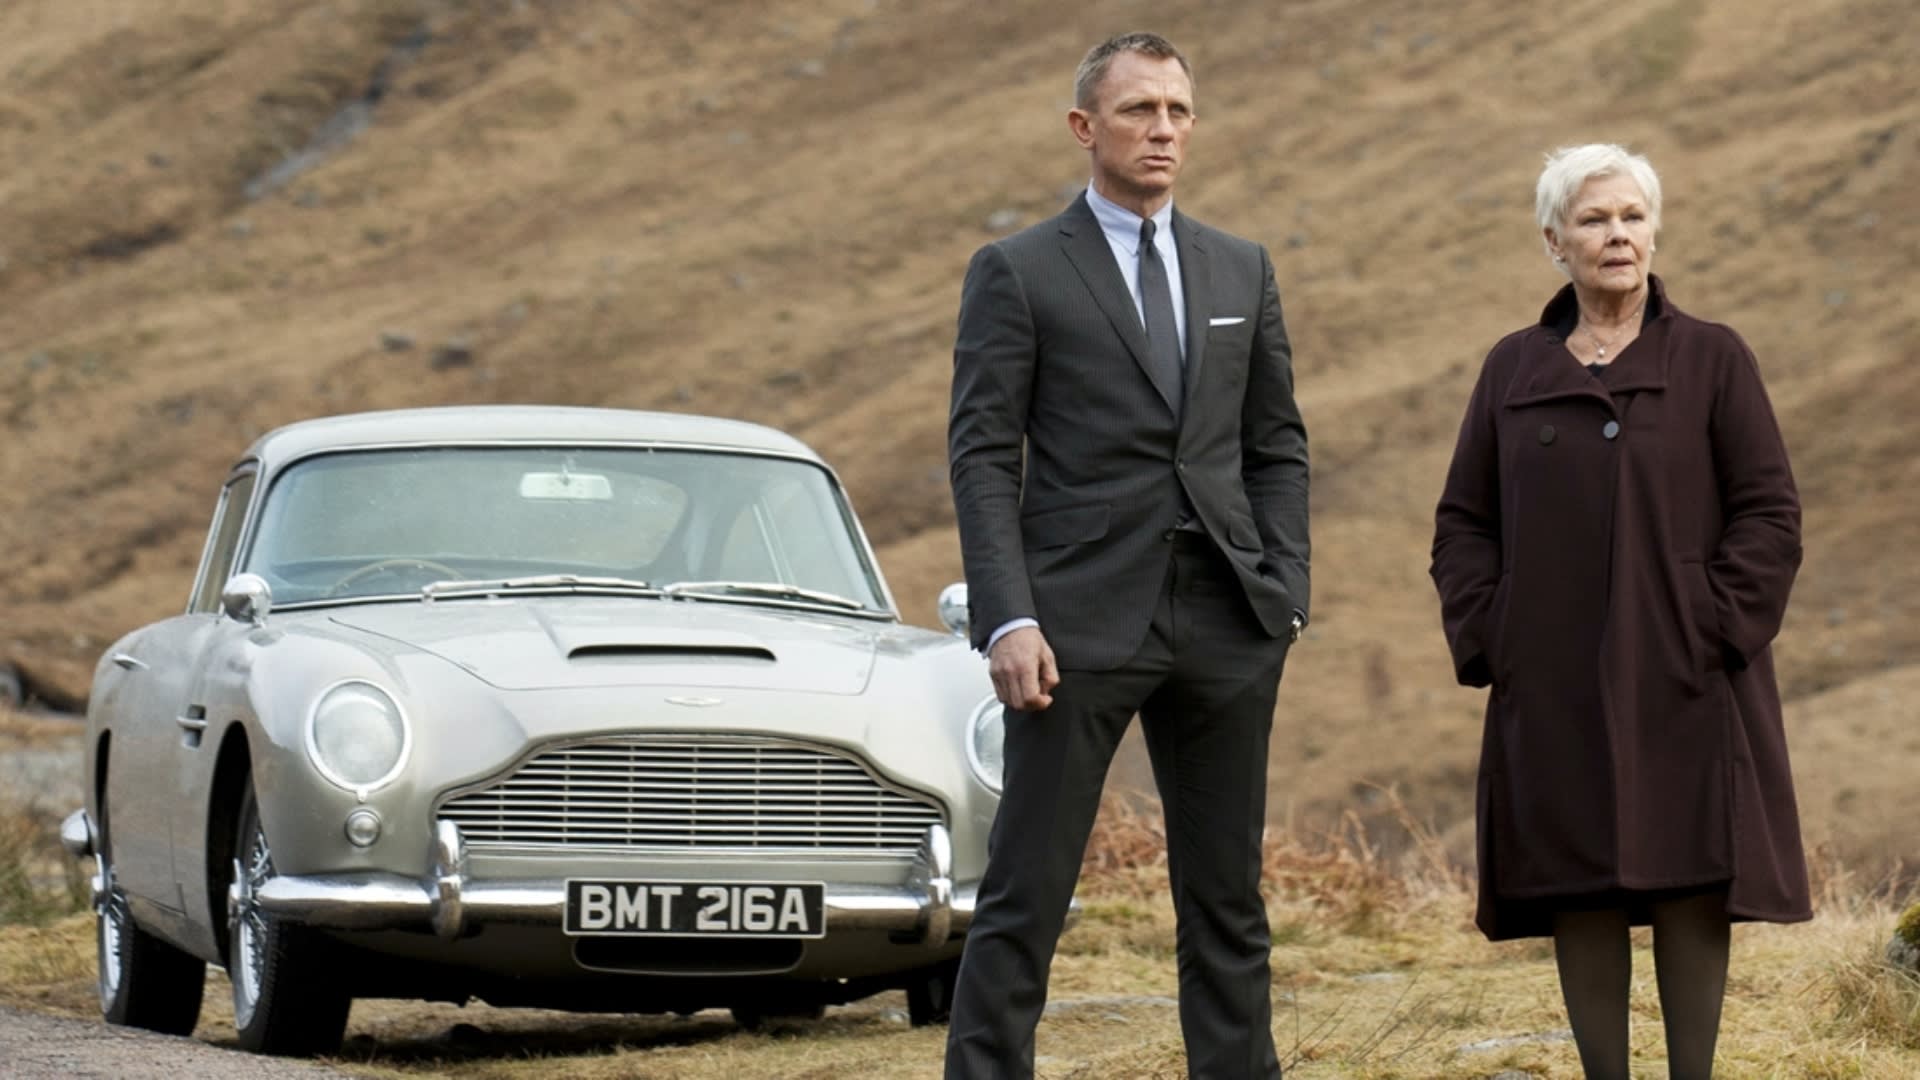 James Bond by nový účet agentů z konkurenční MI5 zřejmě neschvaloval